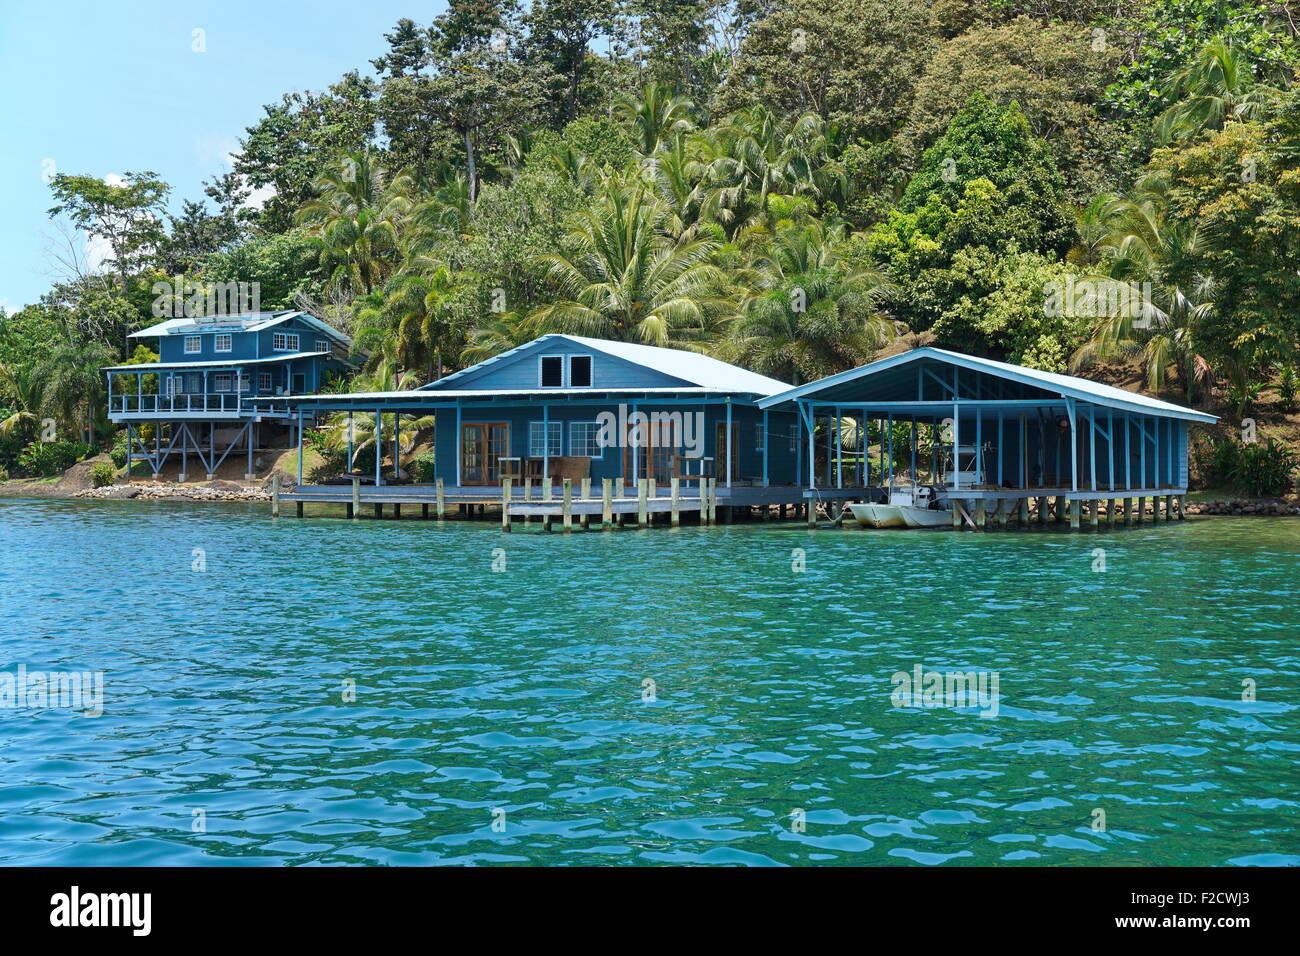 Caraibi home e boat house sull'acqua con lussureggiante vegetazione tropicale sulla costa, Panama America Centrale Foto Stock